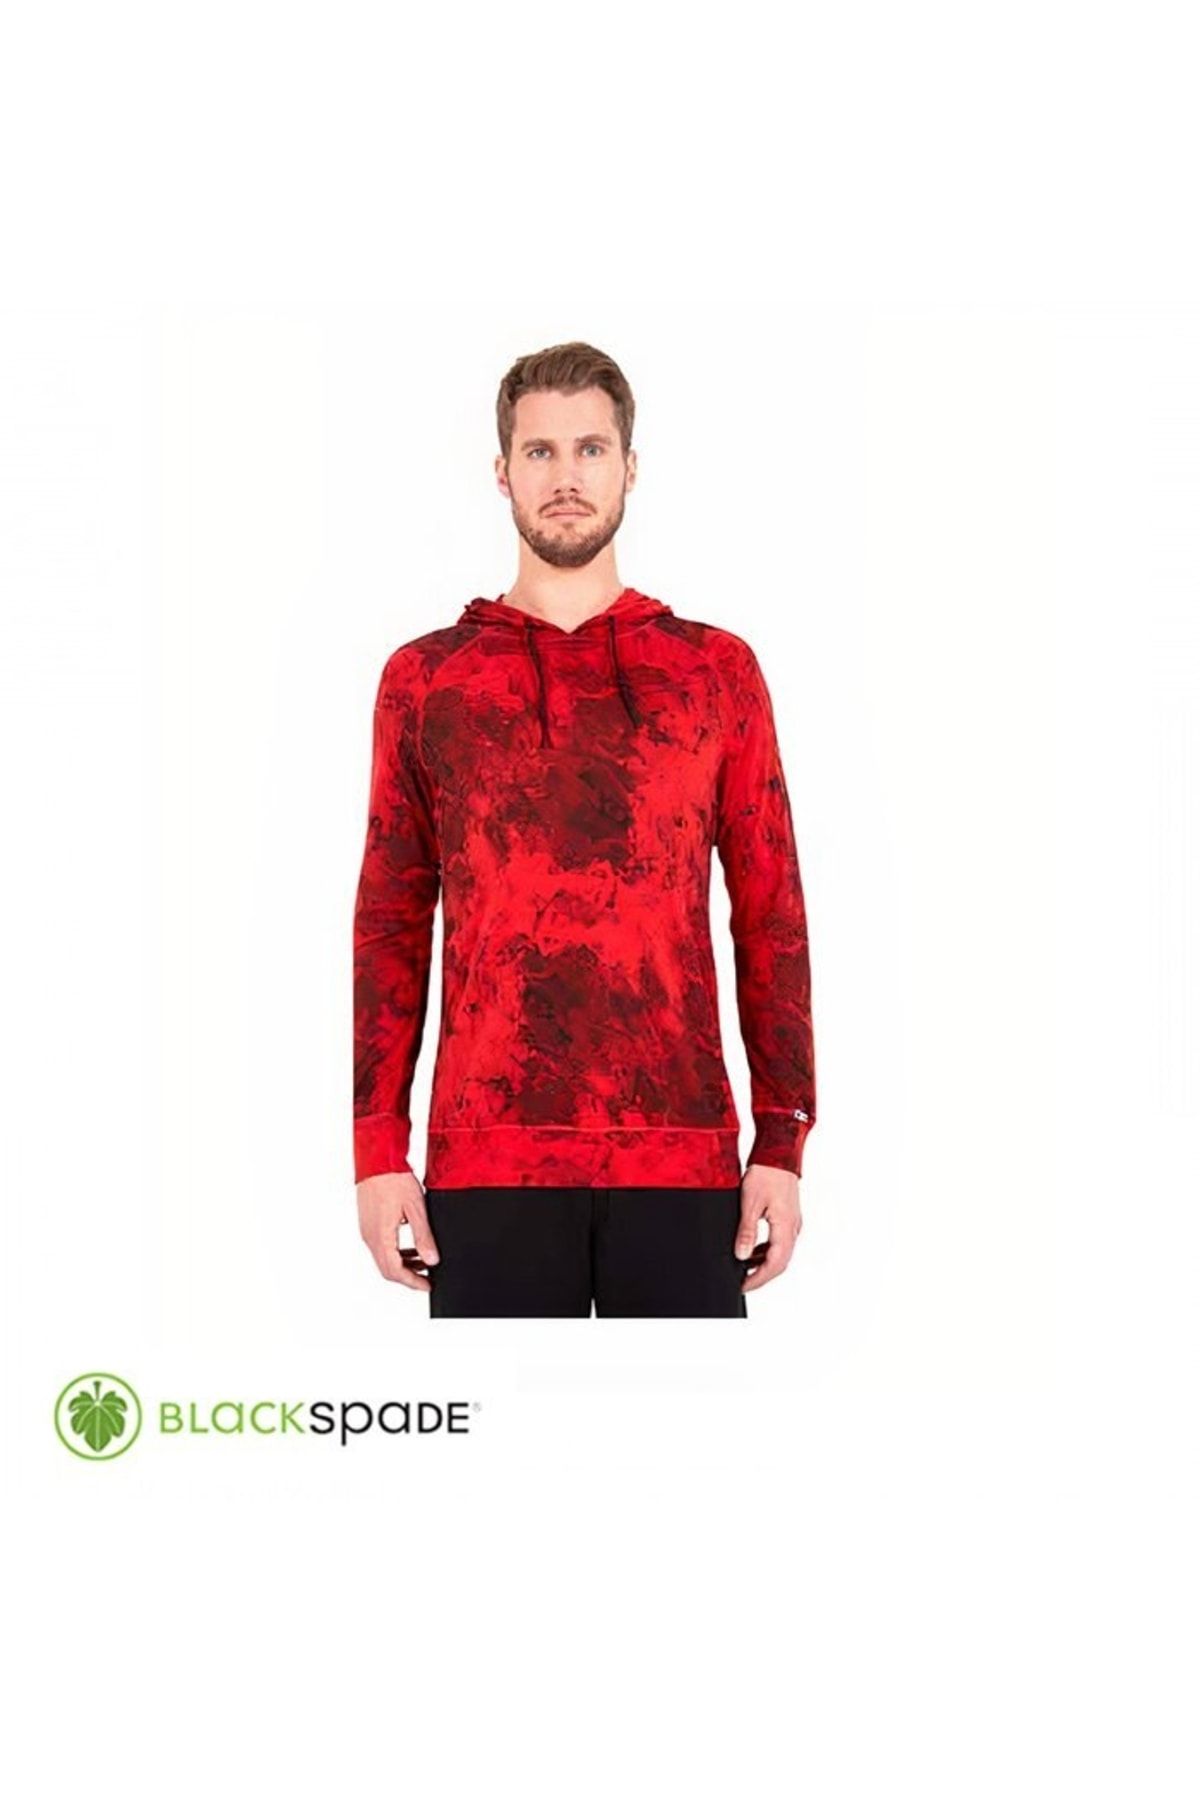 Blackspade Termal Sweatshirt 2. Seviye Kırmızı M